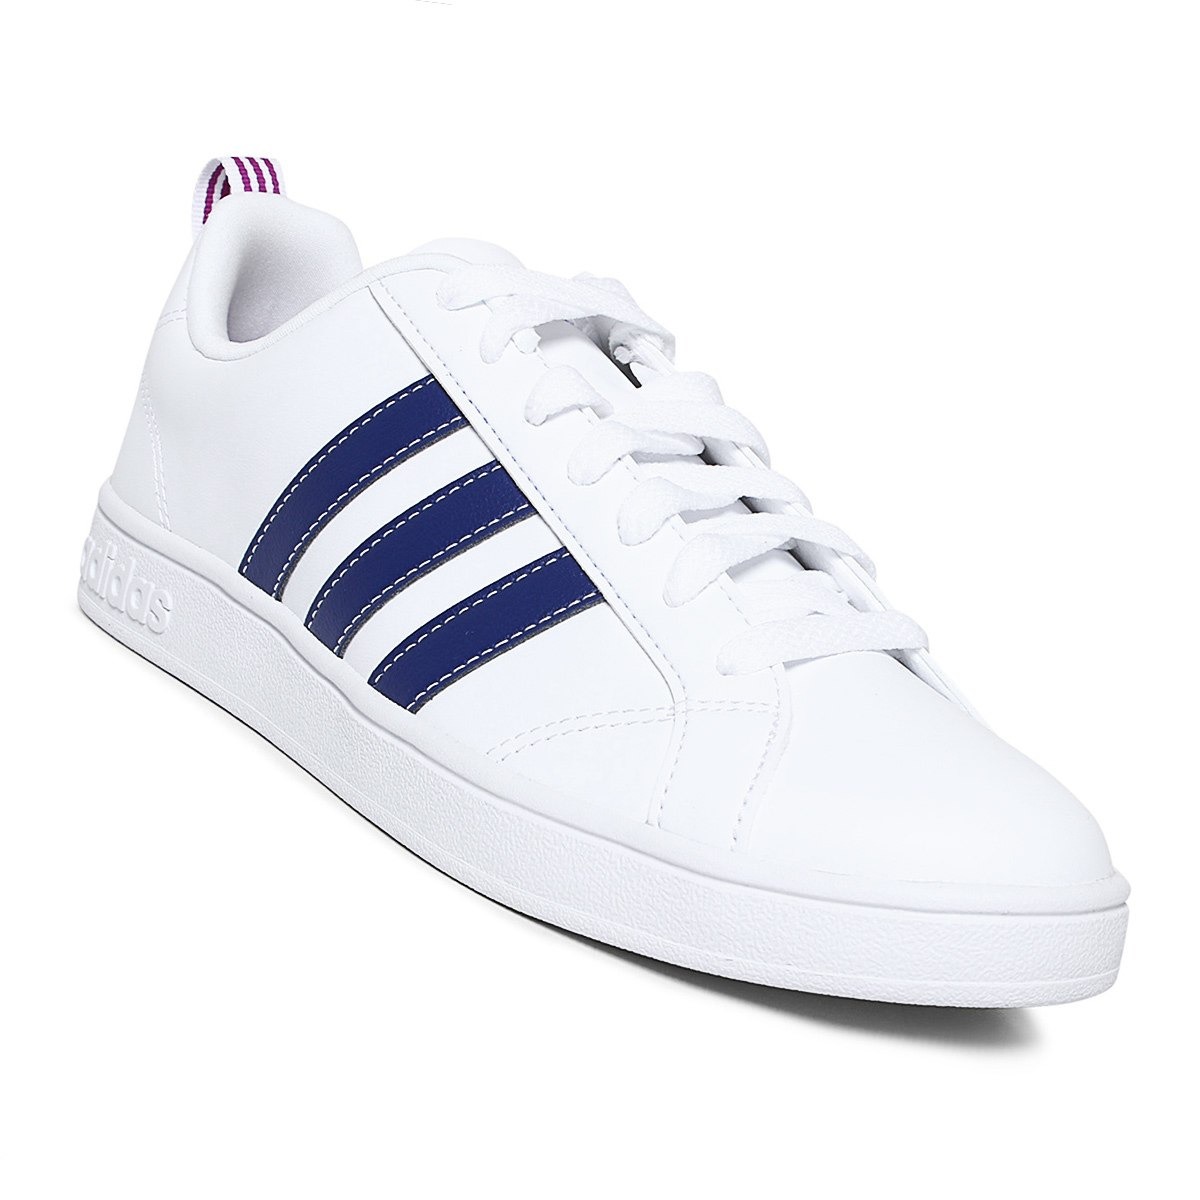 adidas blancos con azul - Tienda Online de Zapatos, Ropa y Complementos de  marca